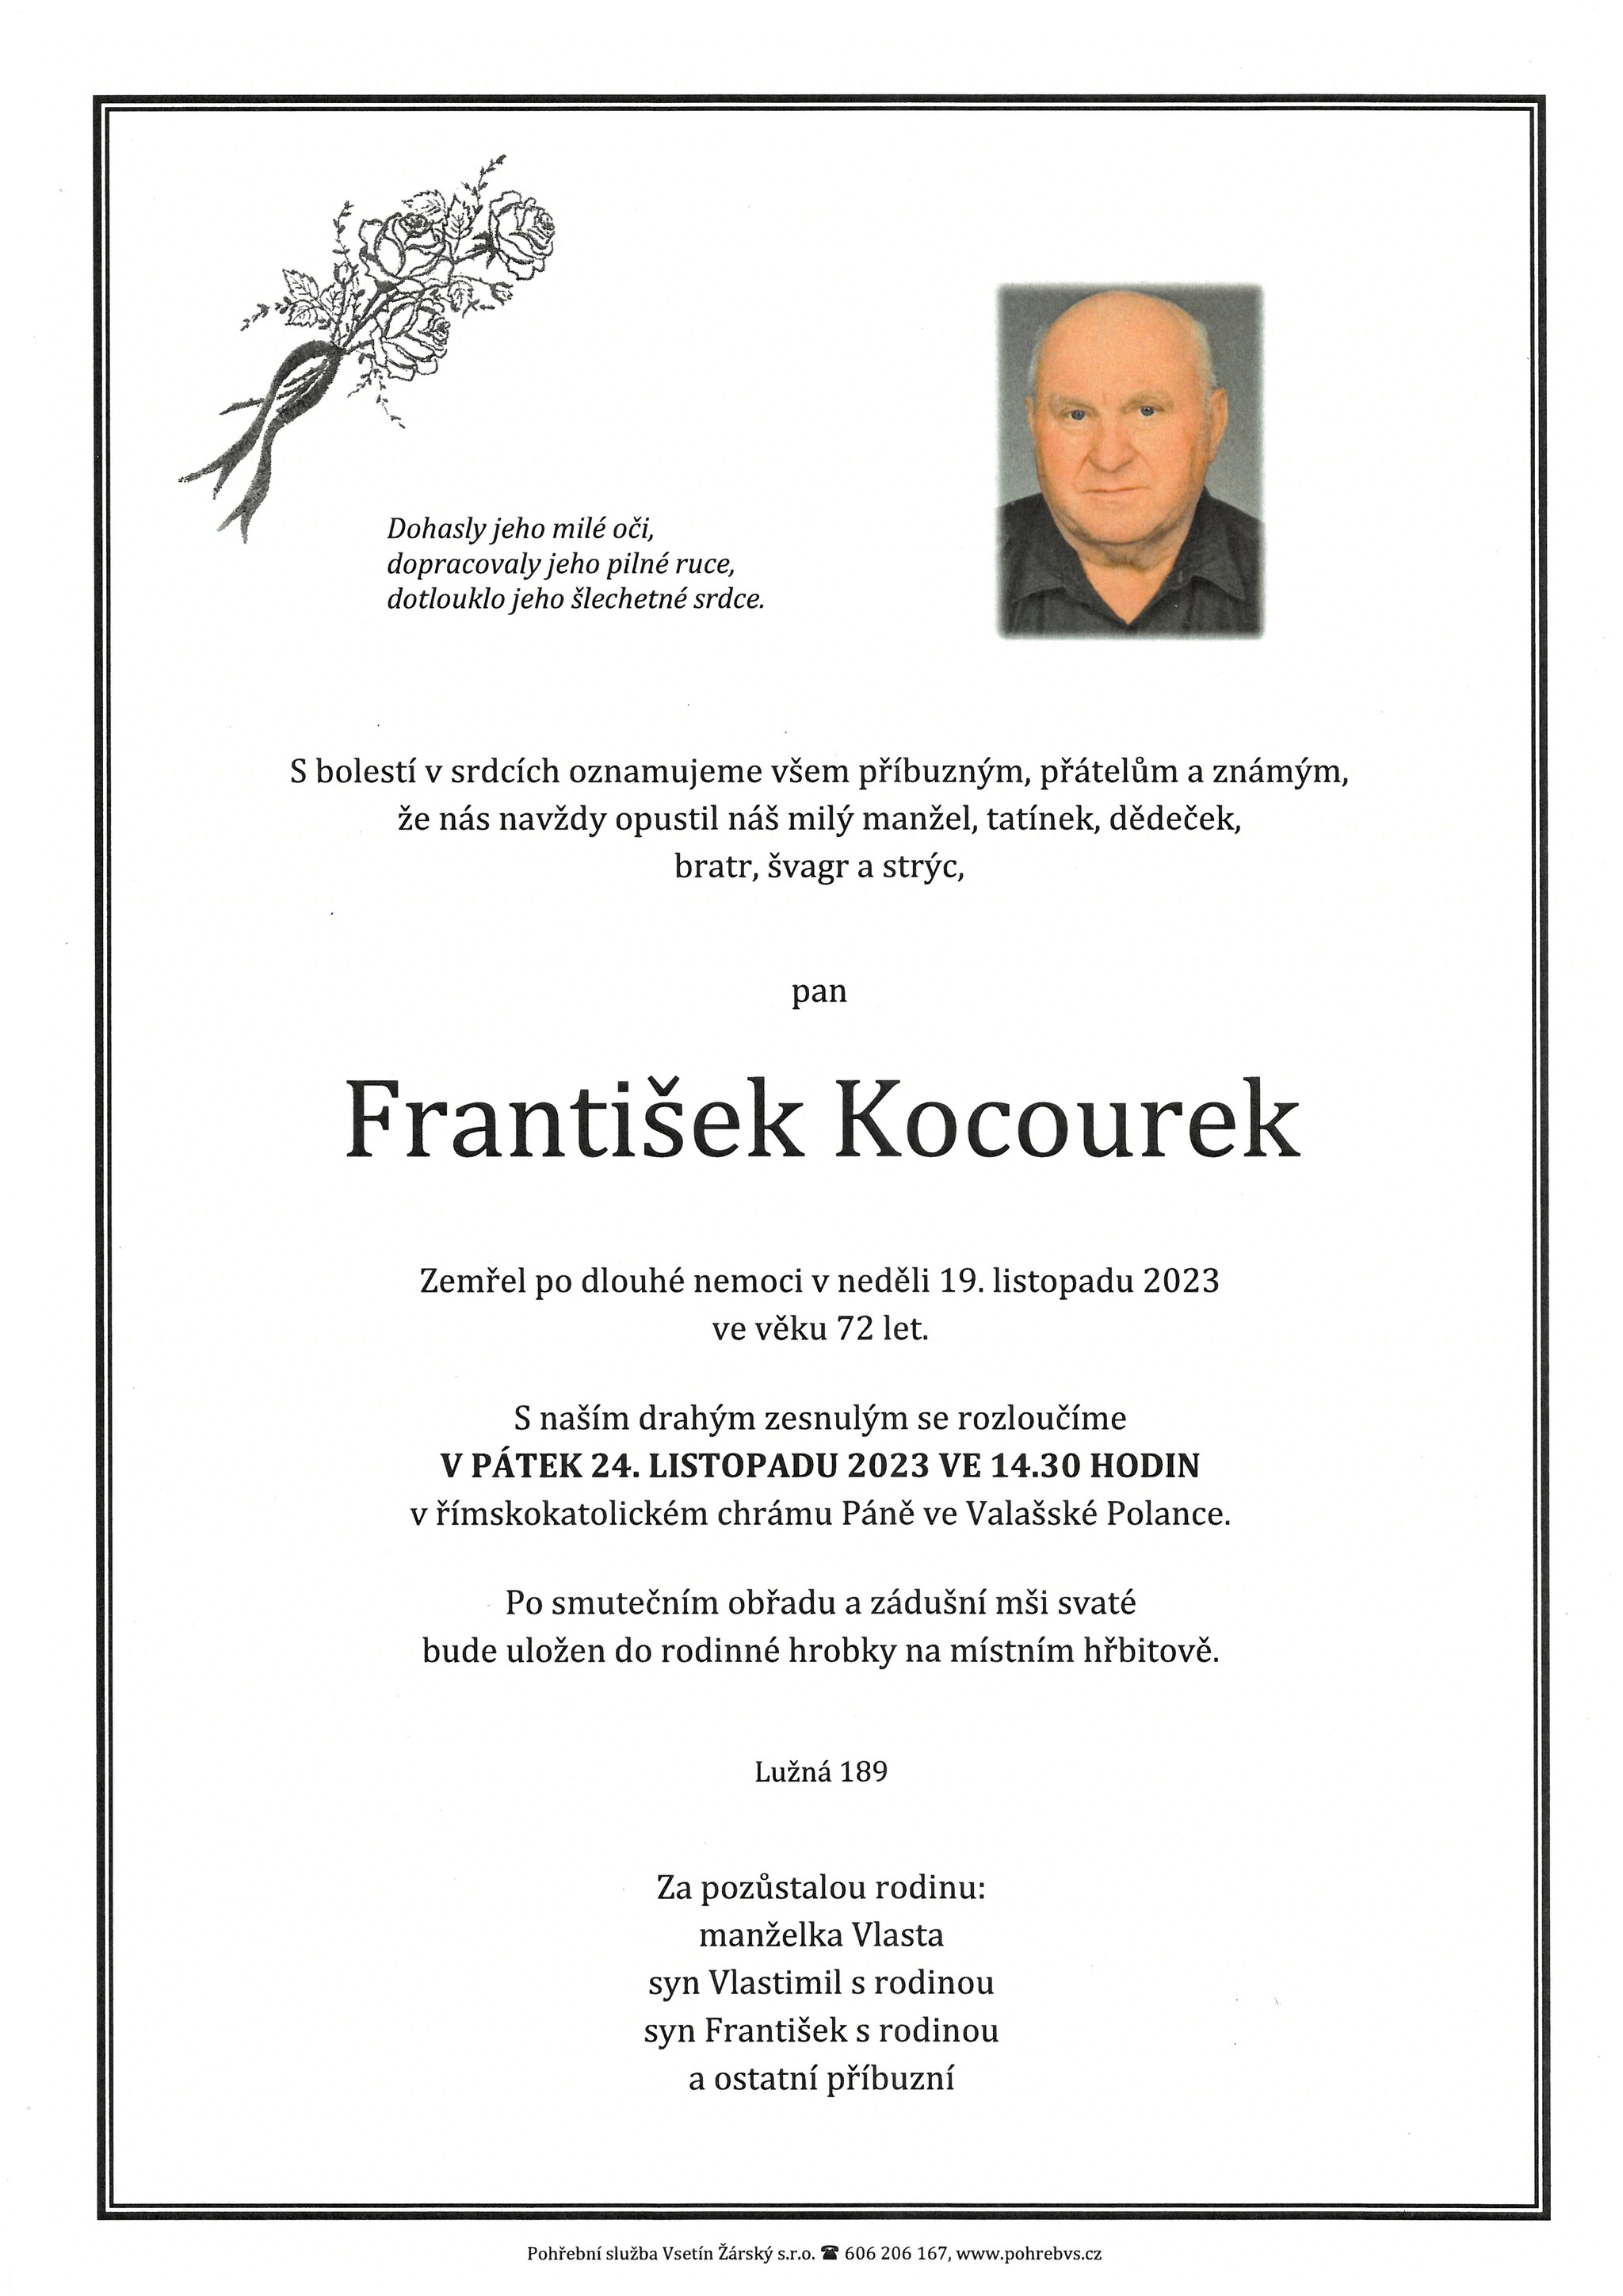 František Kocourek